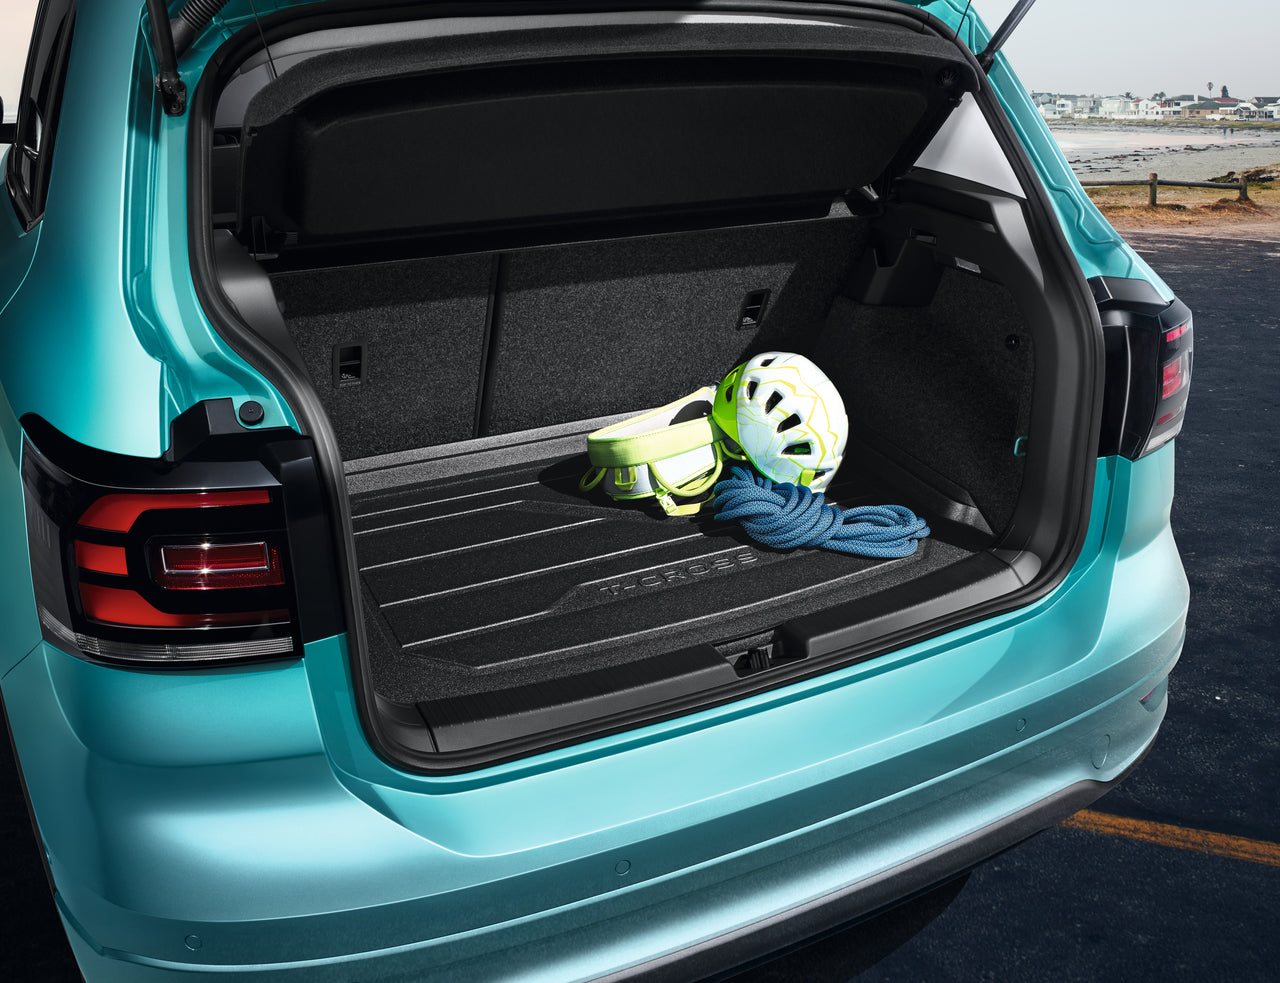 Kofferraumwanne für Volkswagen T-Cross Crossover (04.2019-.) -  Kofferraummatte rutschfest Schutzmatte - vertiefte Ladefläche; Varioboden  im tiefsten Ebene